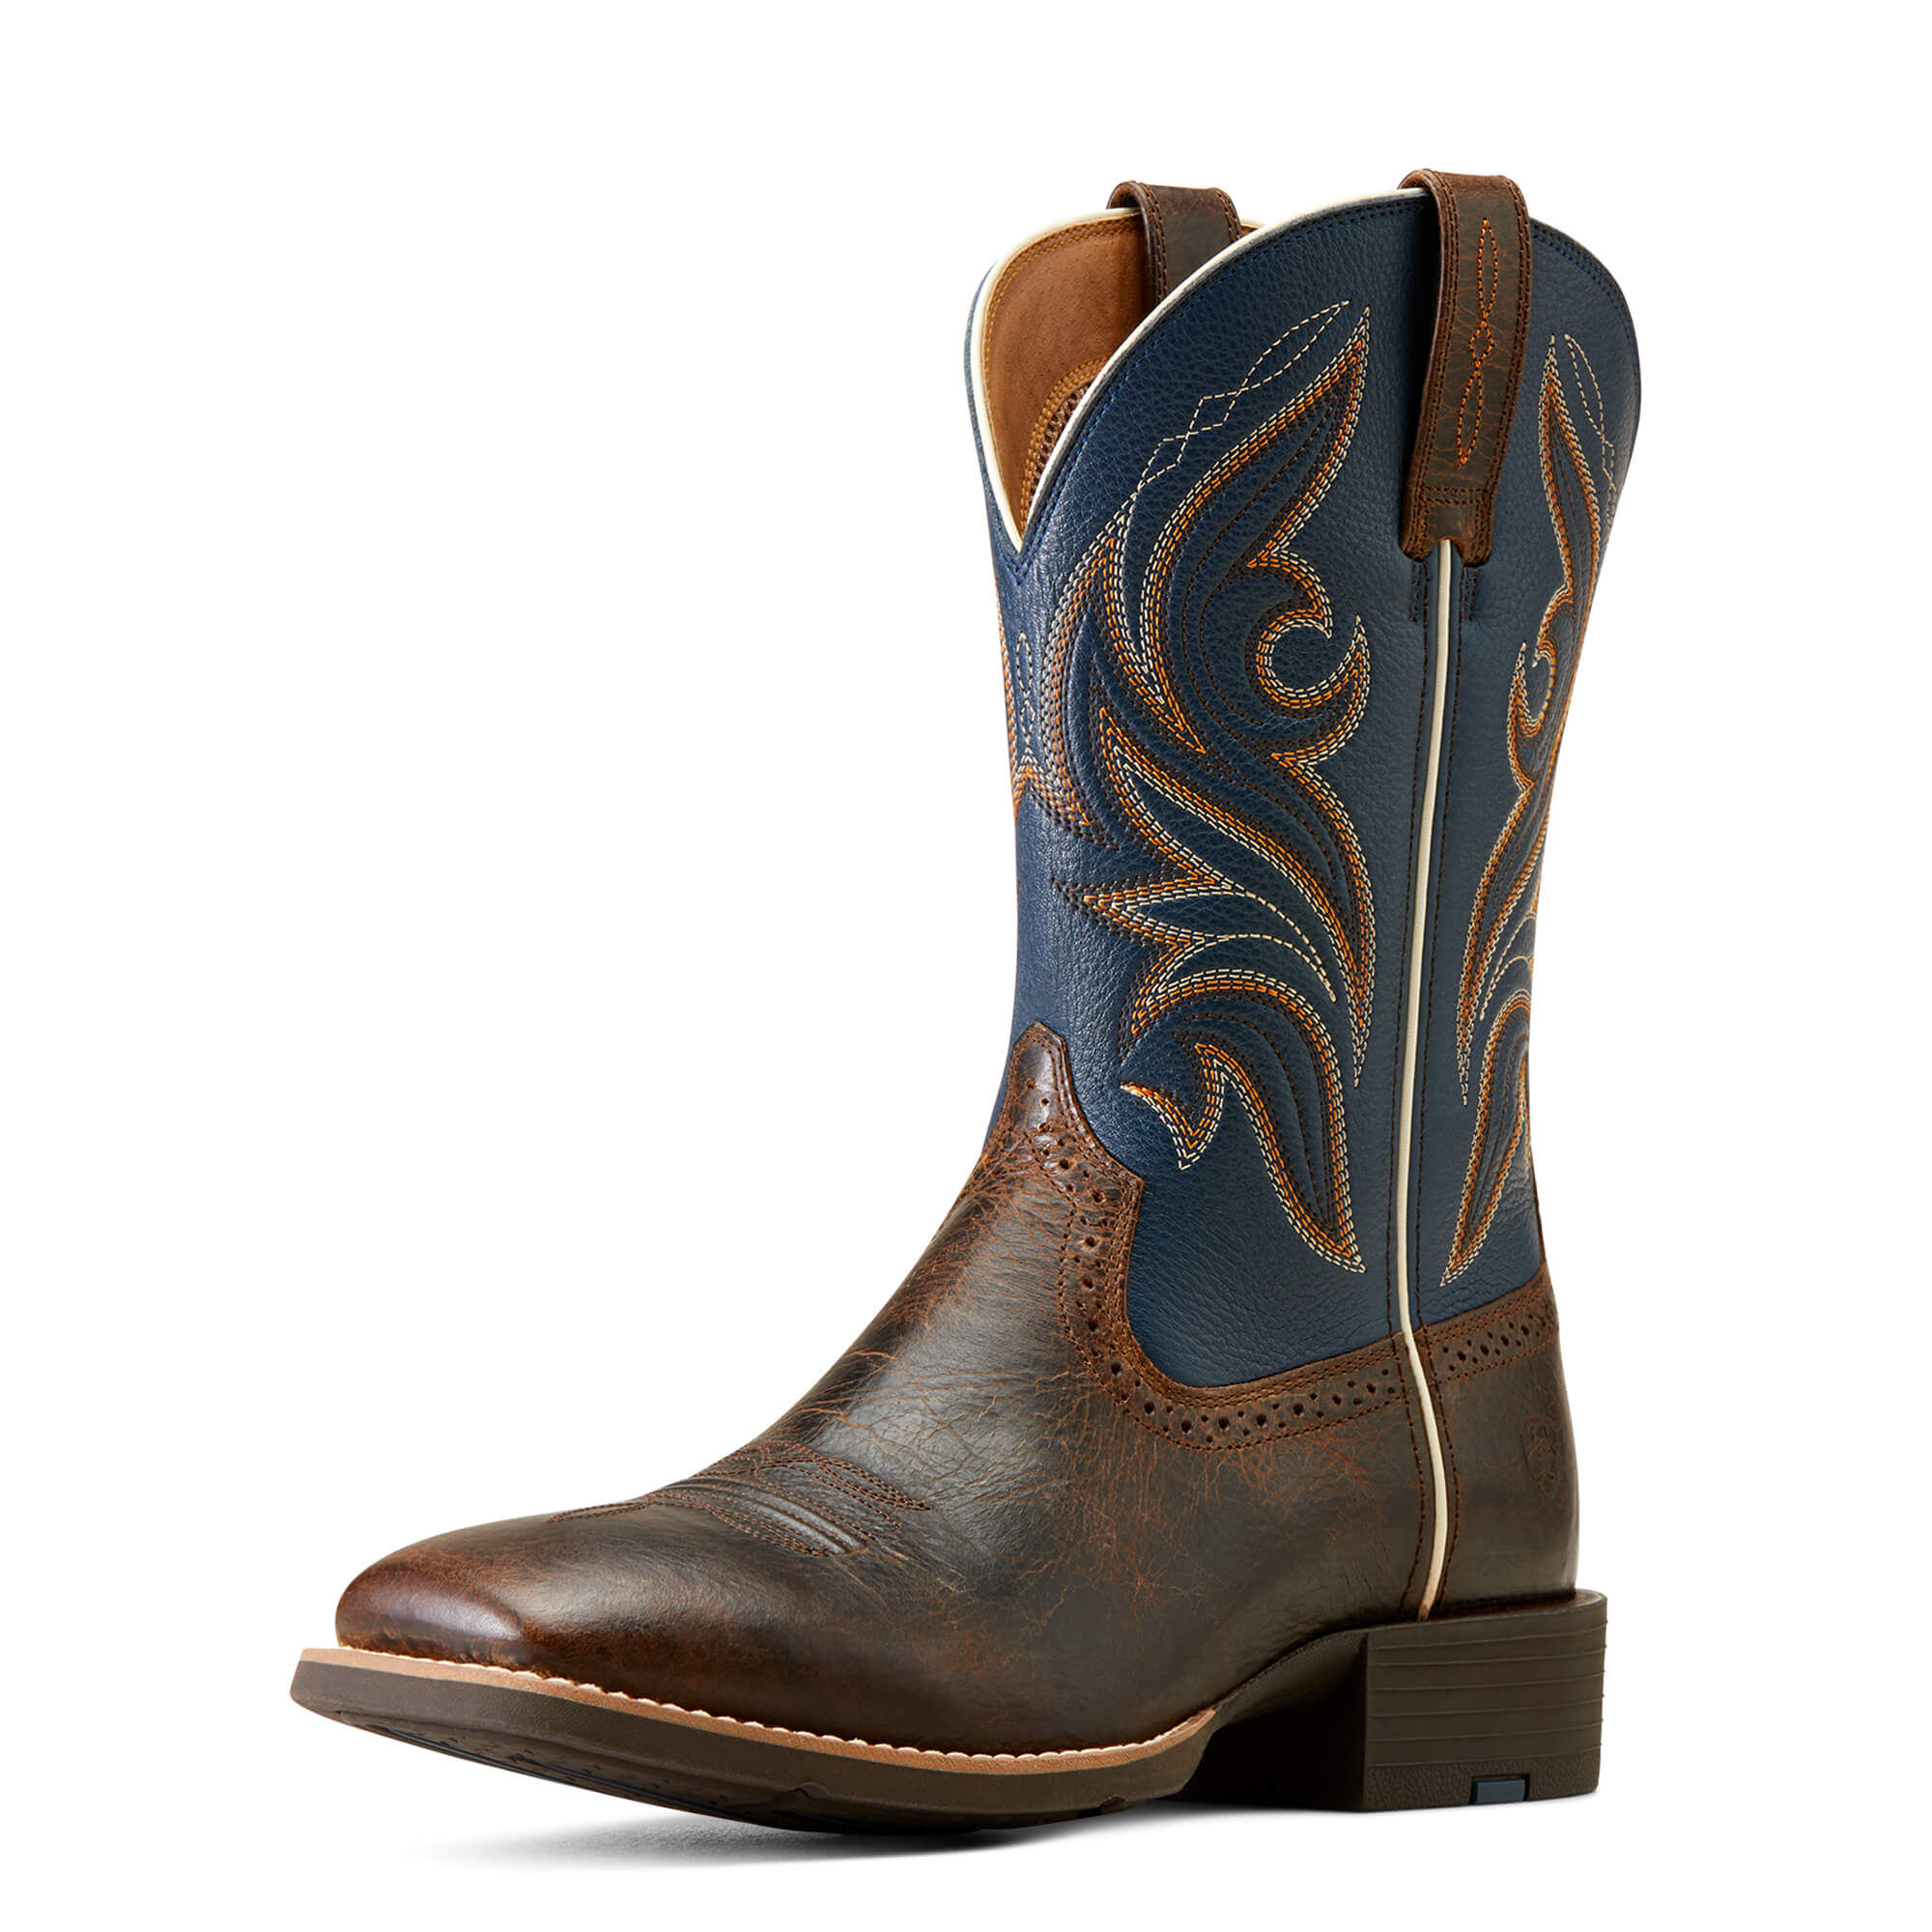 shoe show cowboy boots